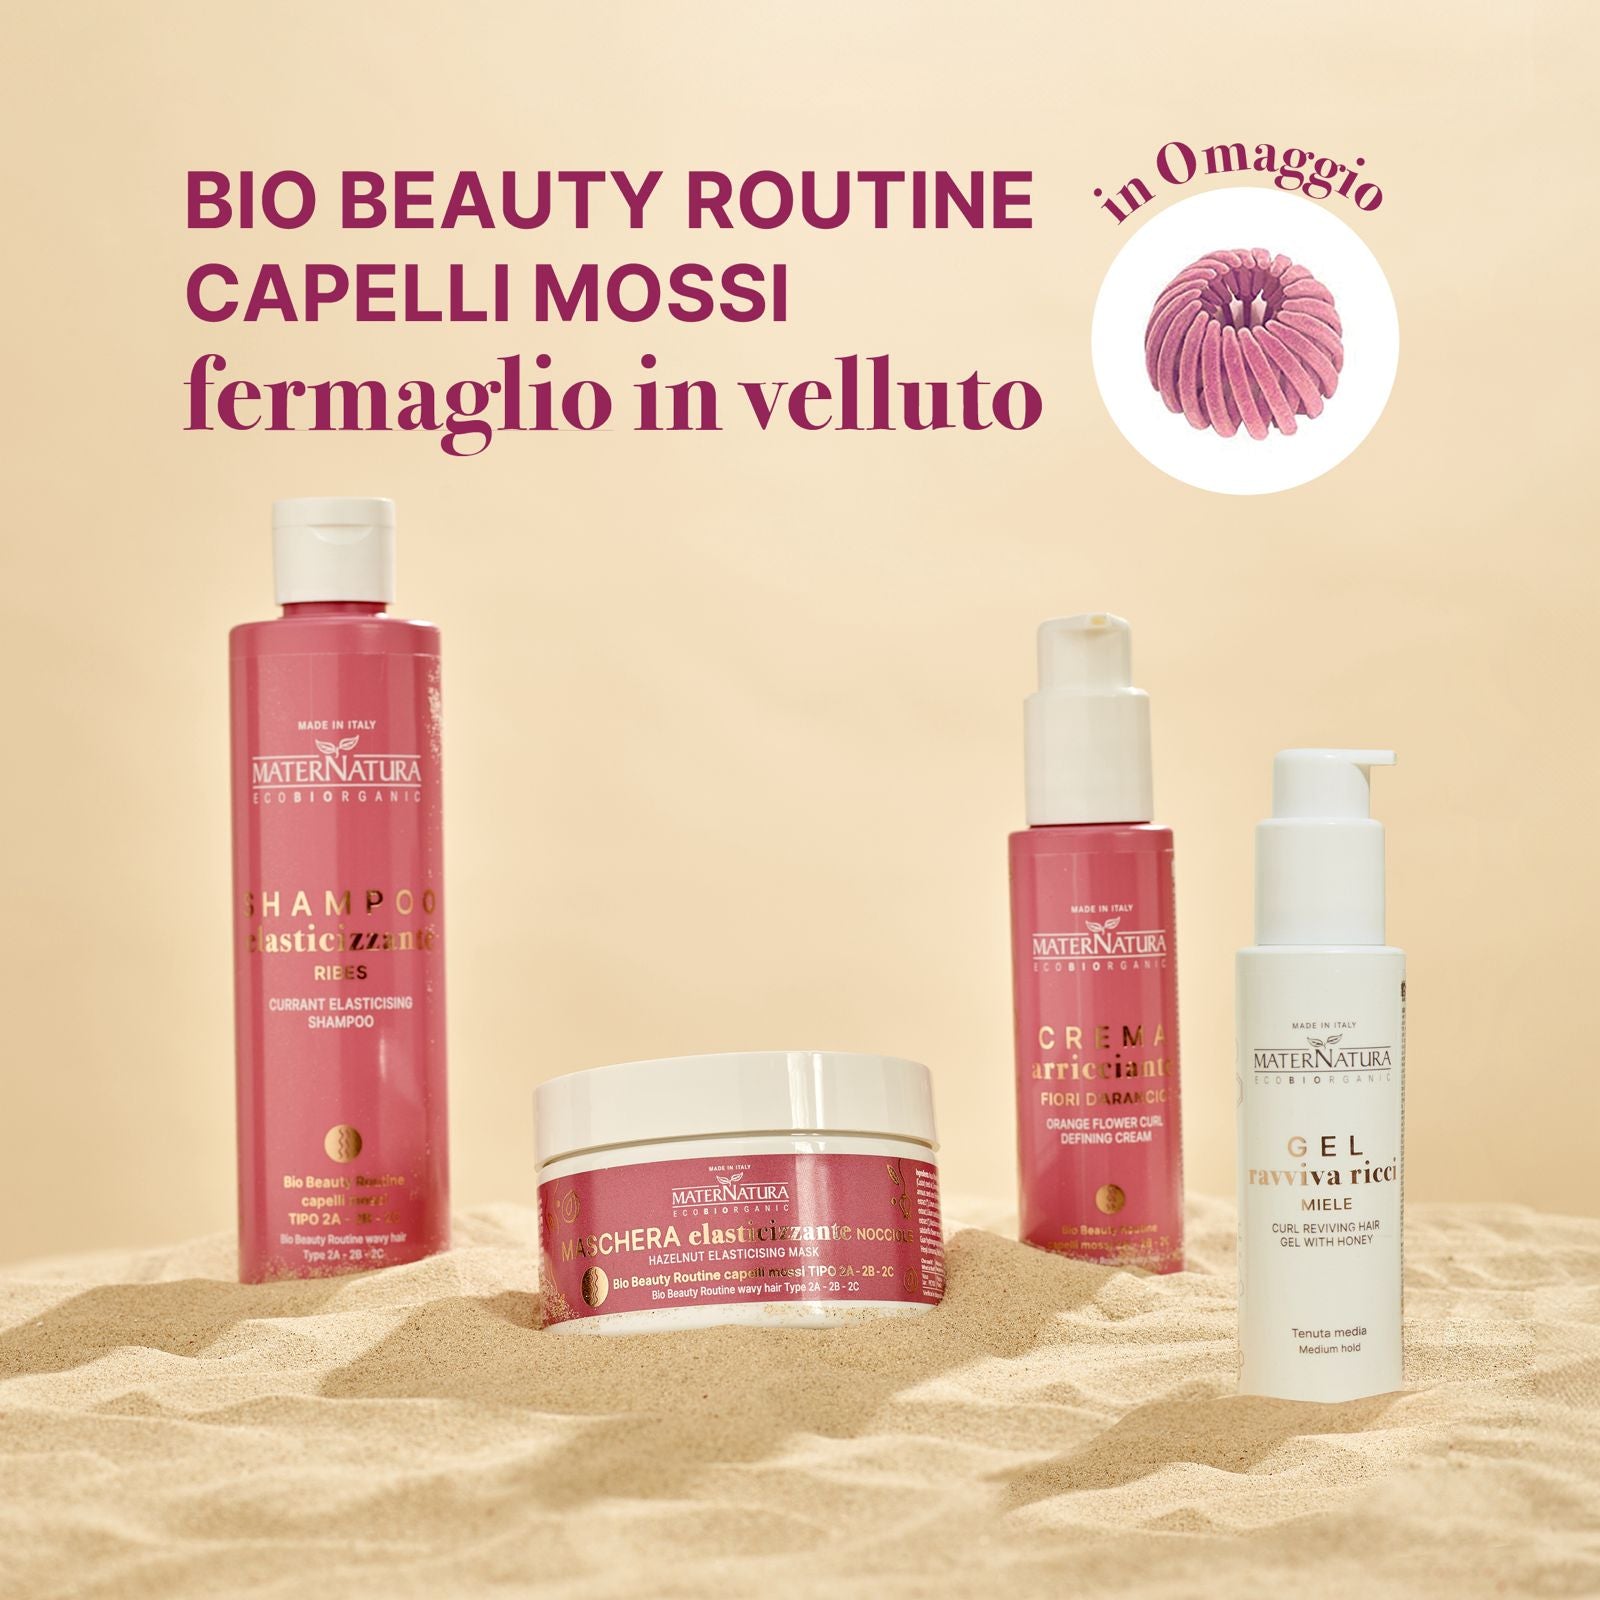 Bio Beauty Routine Capelli Mossi